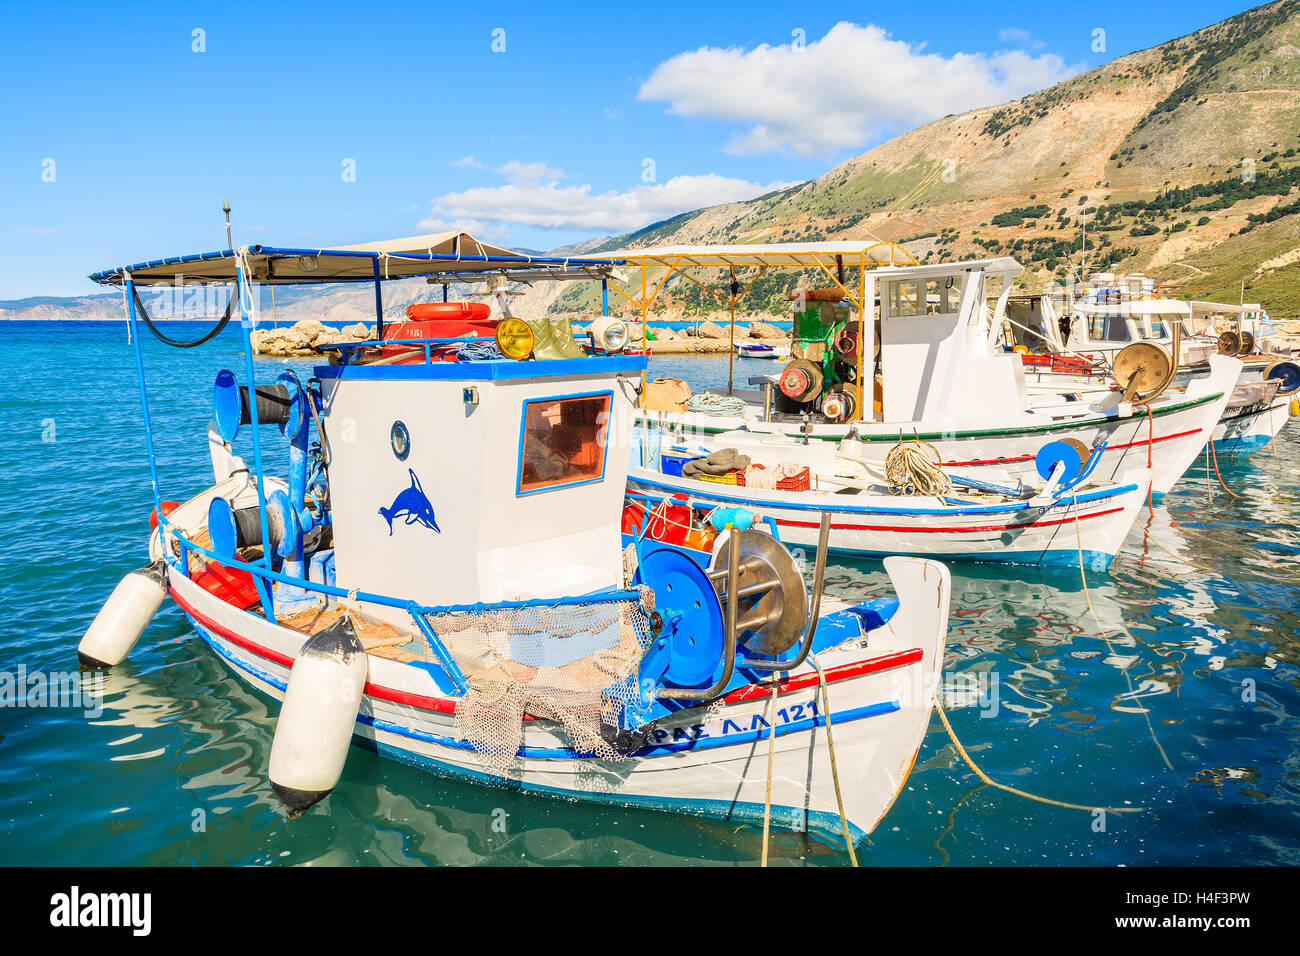 ZOLA porta, l'isola di Cefalonia - Sep 16, 2014: tradizionale greco barche da pesca nel porto di Zola village, l'isola di Cefalonia in Grecia. Le isole greche sono molto popolare meta di vacanza in Europa. Foto Stock